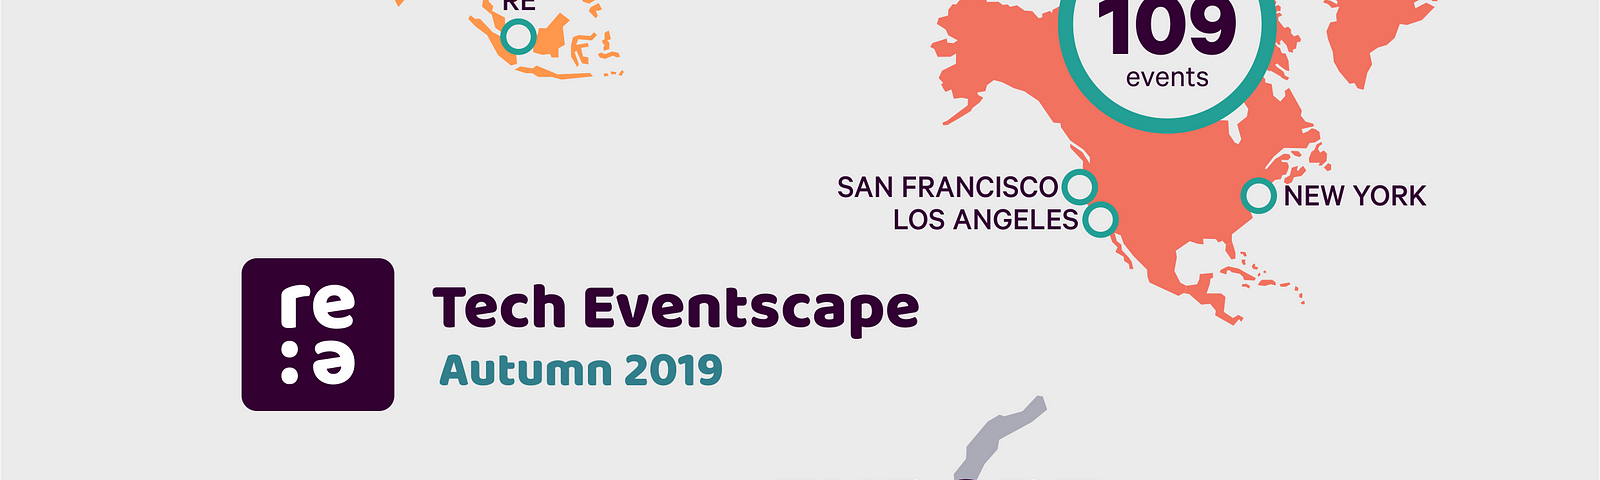 re:event tech eventscape, autumn 2019